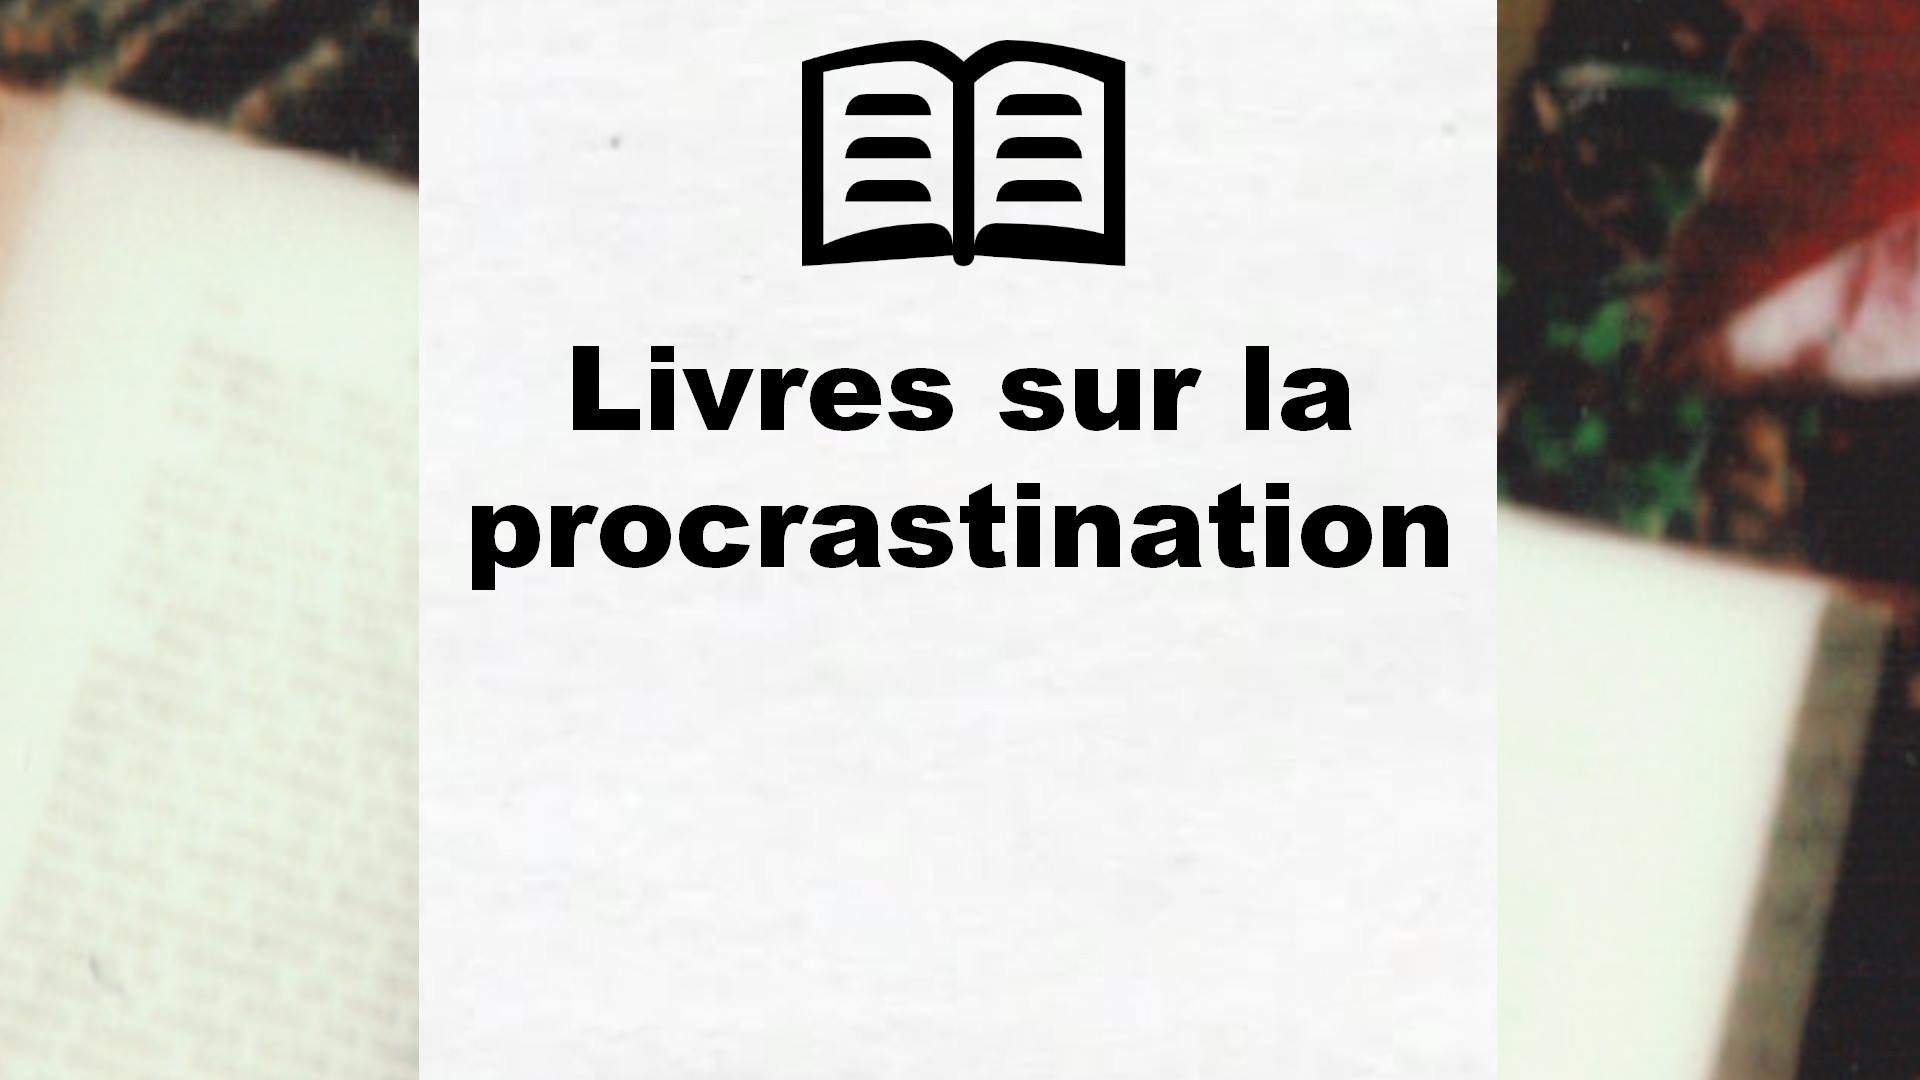 Livres sur la procrastination